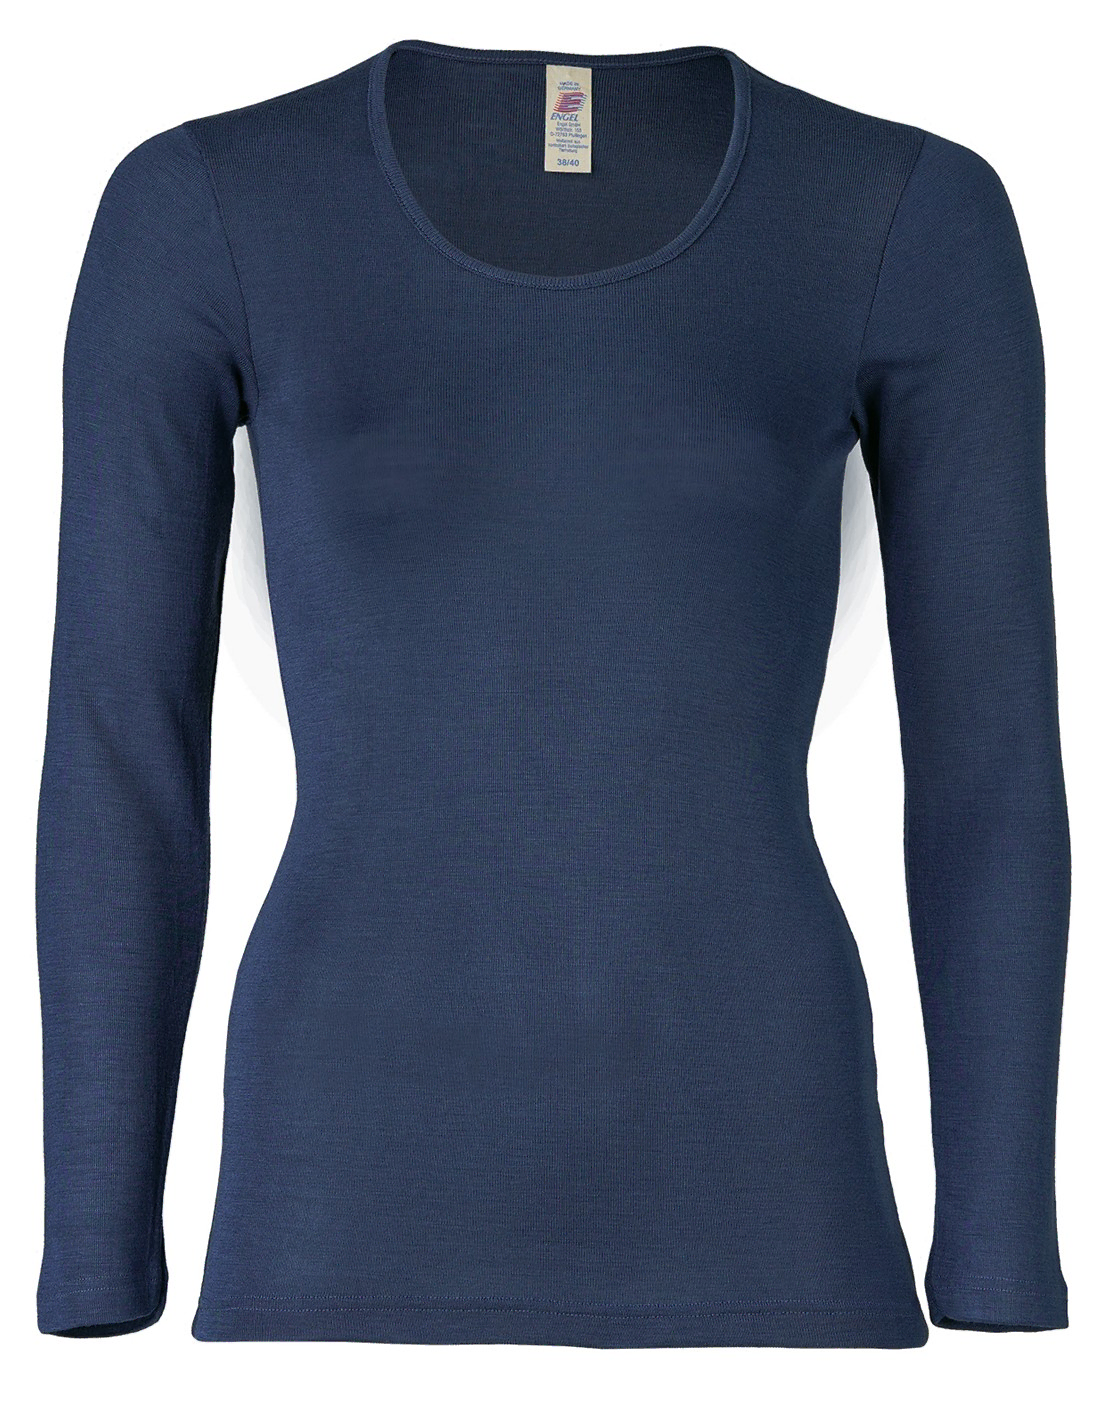 Image of Dames Shirt Lange Mouw Zijde Wol Engel Natur, Kleur Navy blauw, Maat 38/40 - Medium